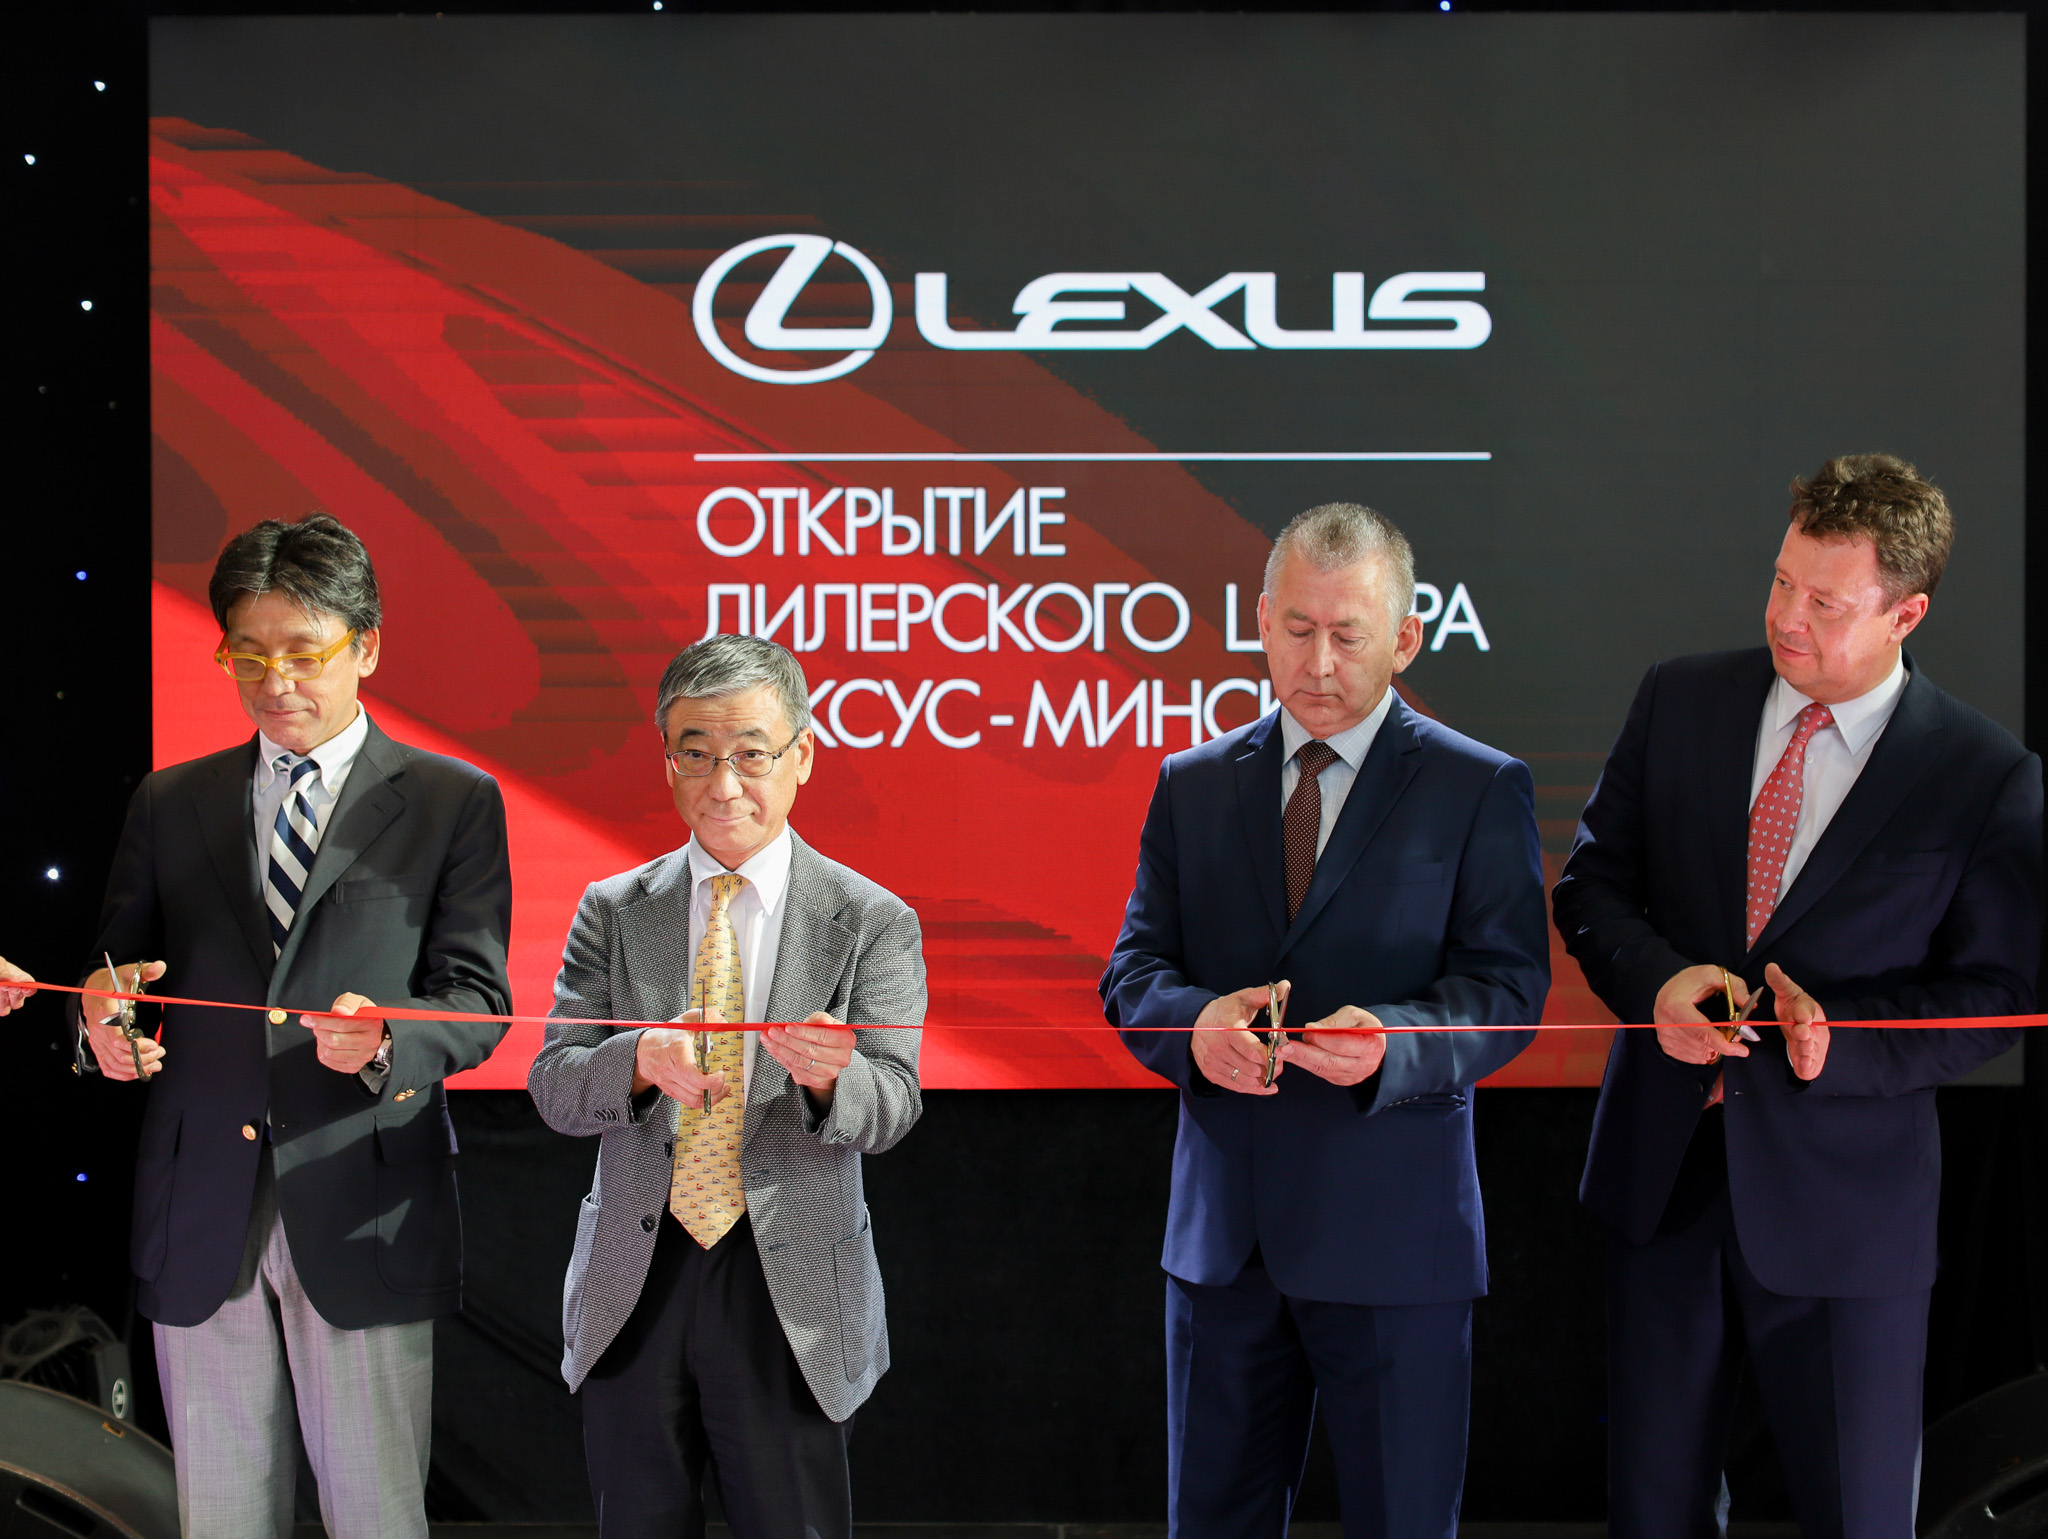 открытие дилерского центра Тойоты и Лексус в Минске